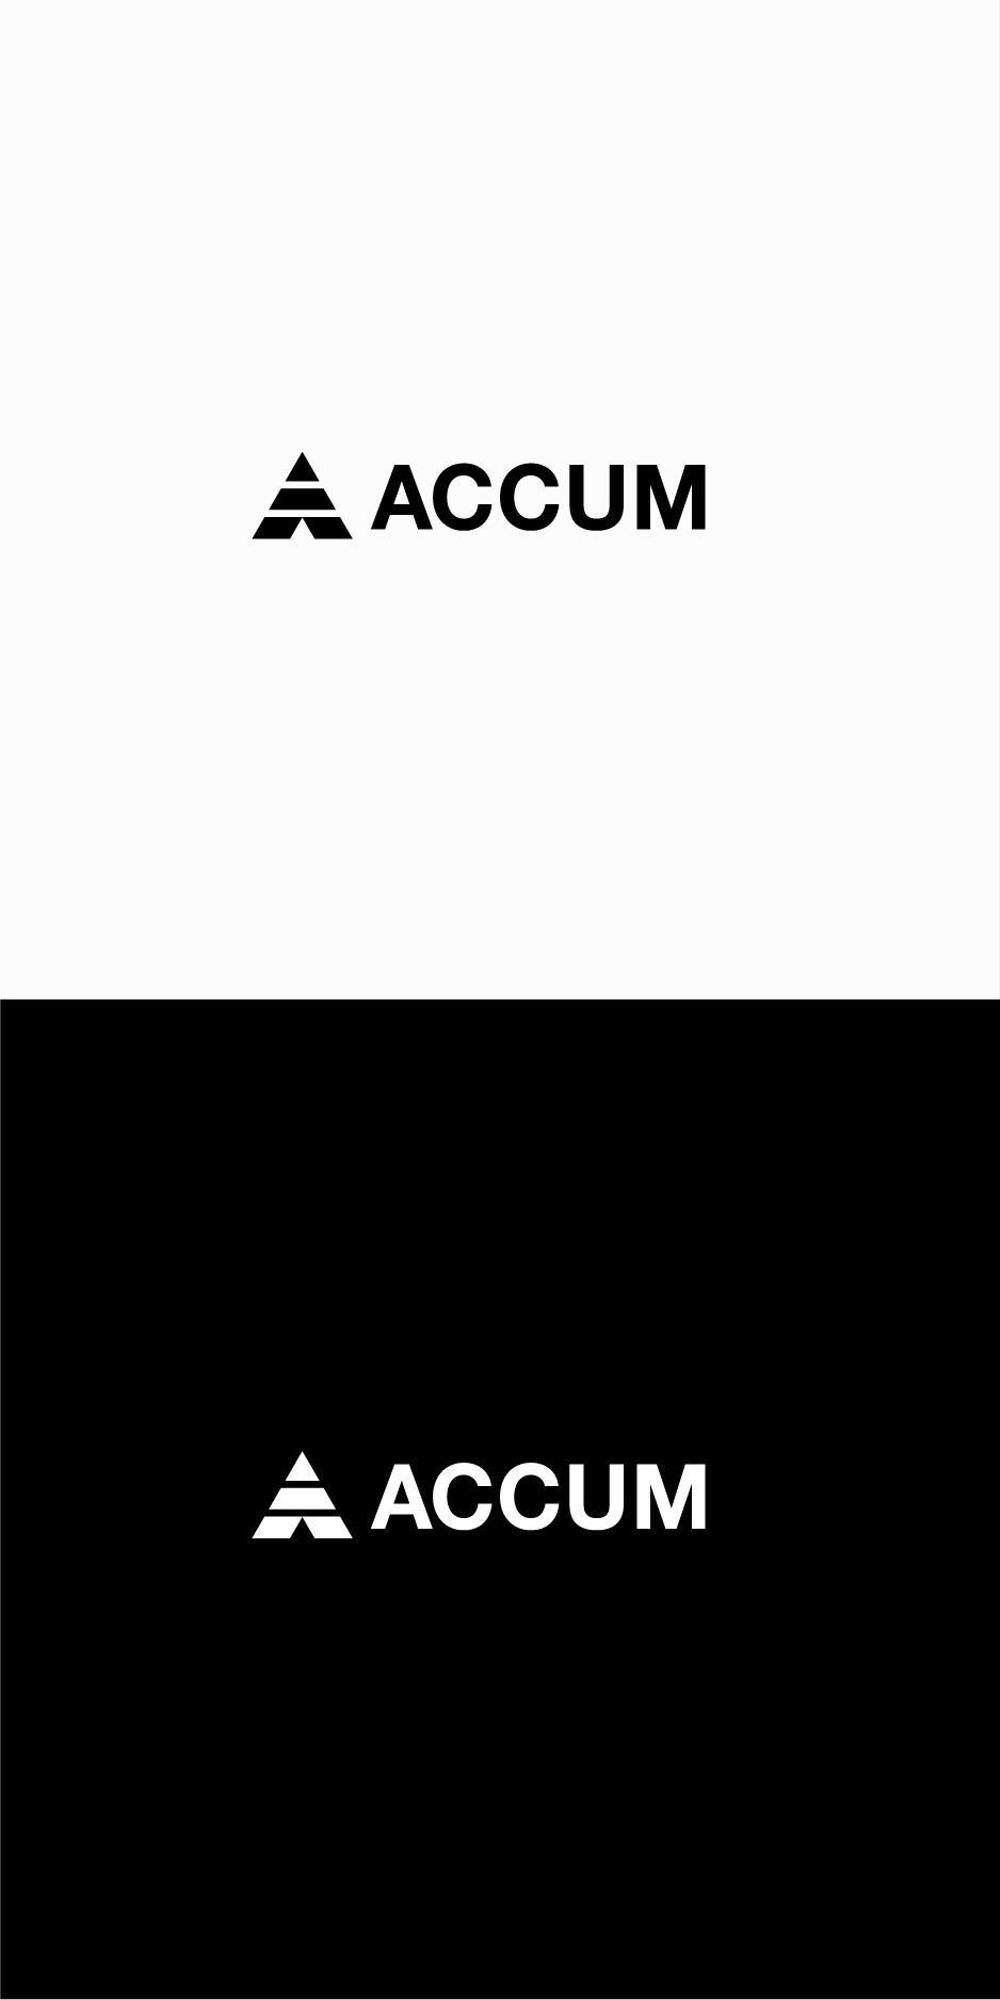 トレーニングジム/オンラインアカデミー「Accum」のロゴ